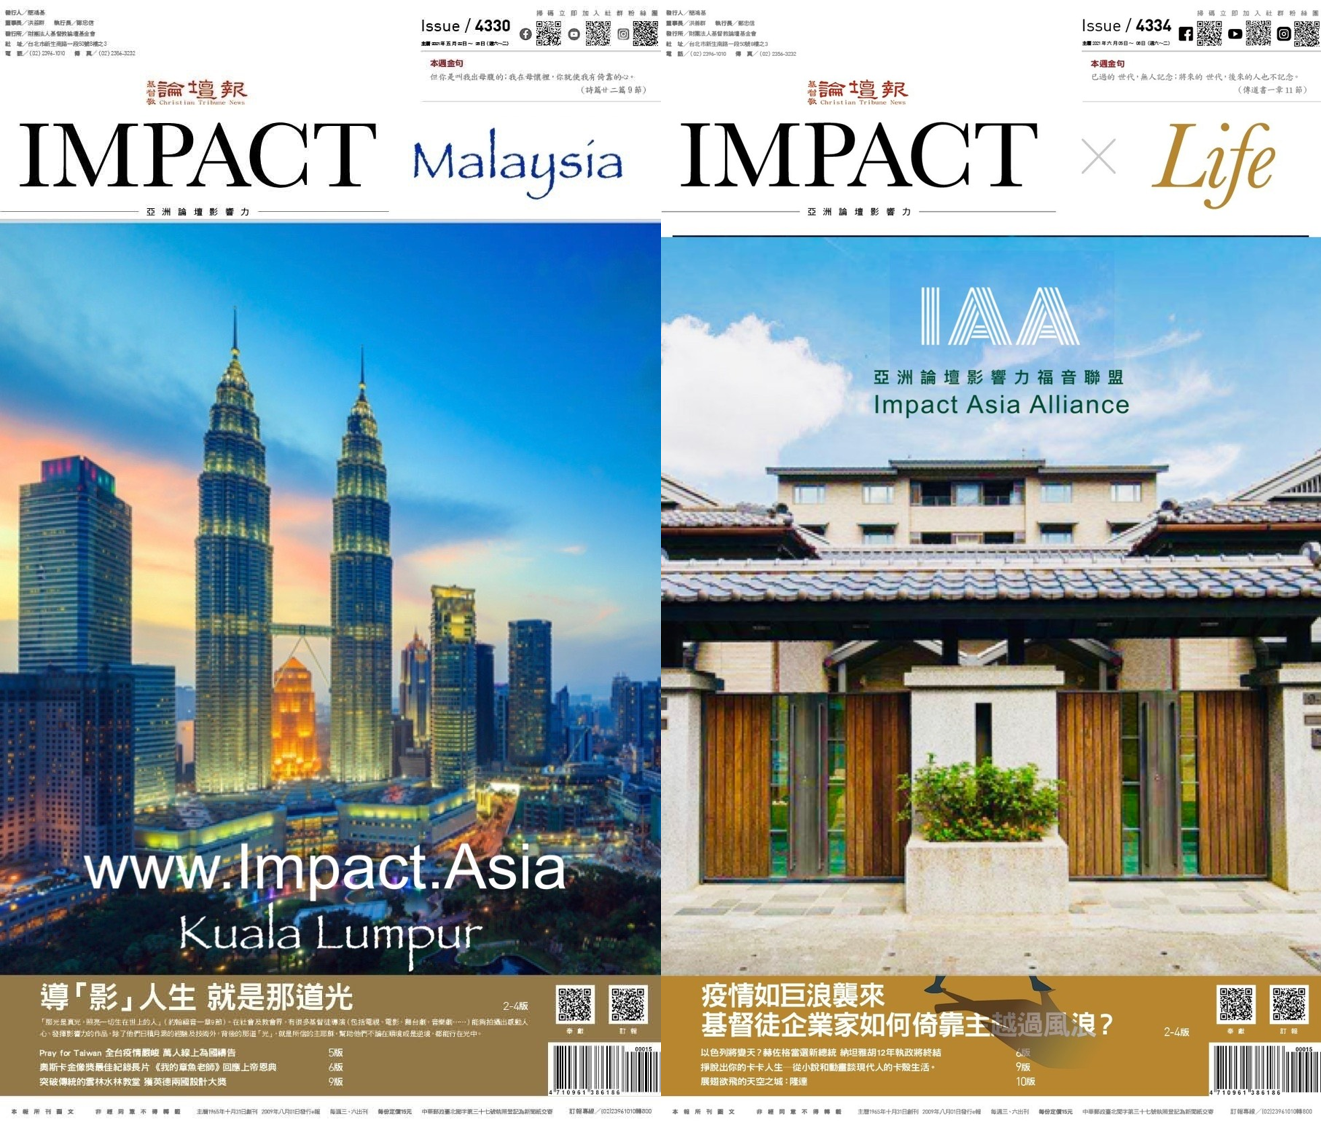 「亞洲論壇影響力-馬來西亞」計畫示意圖。